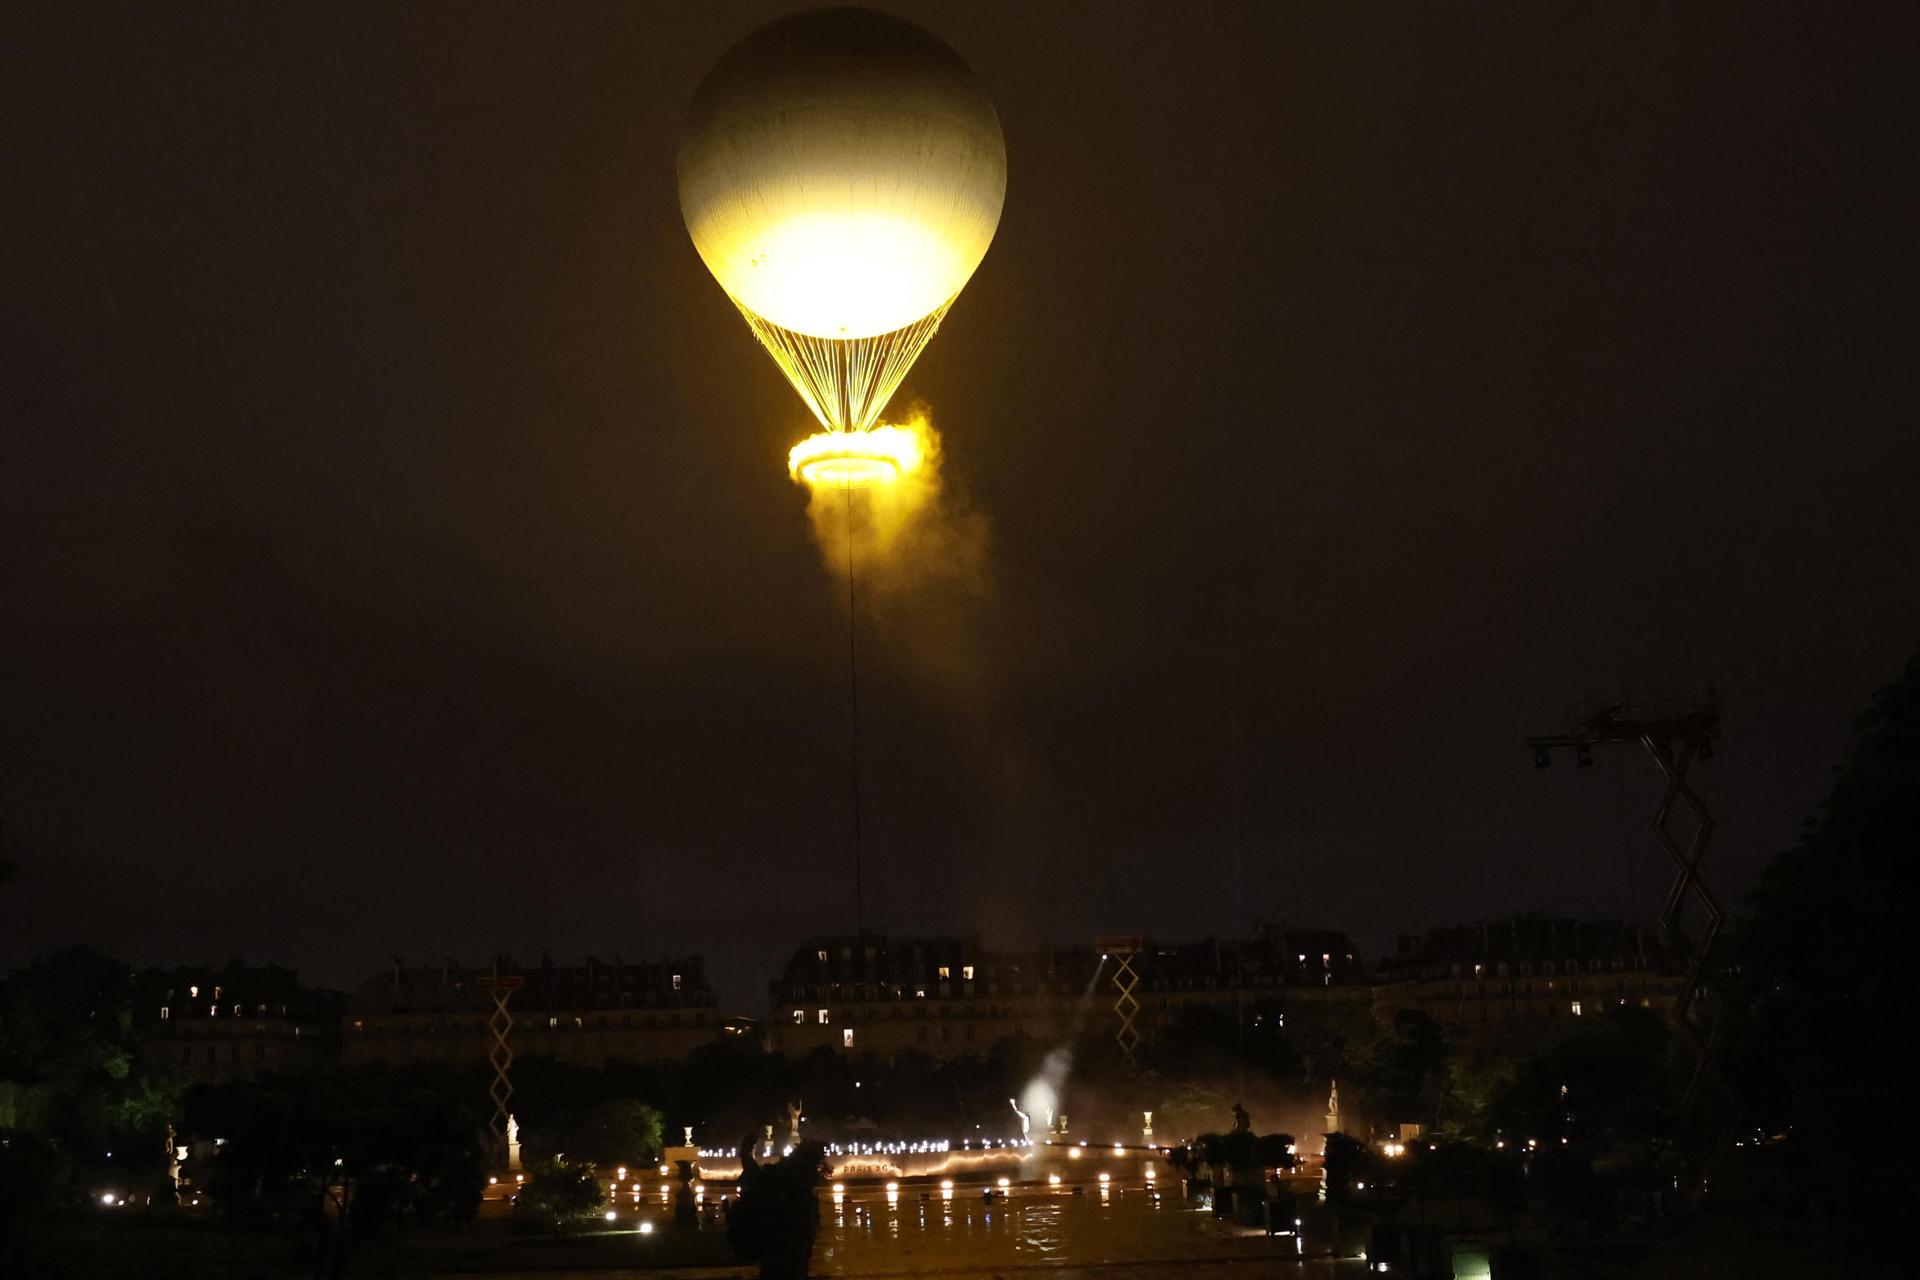 El pebeter olímpic ha quedat instal·lat en un globus aerostàtic sobre París